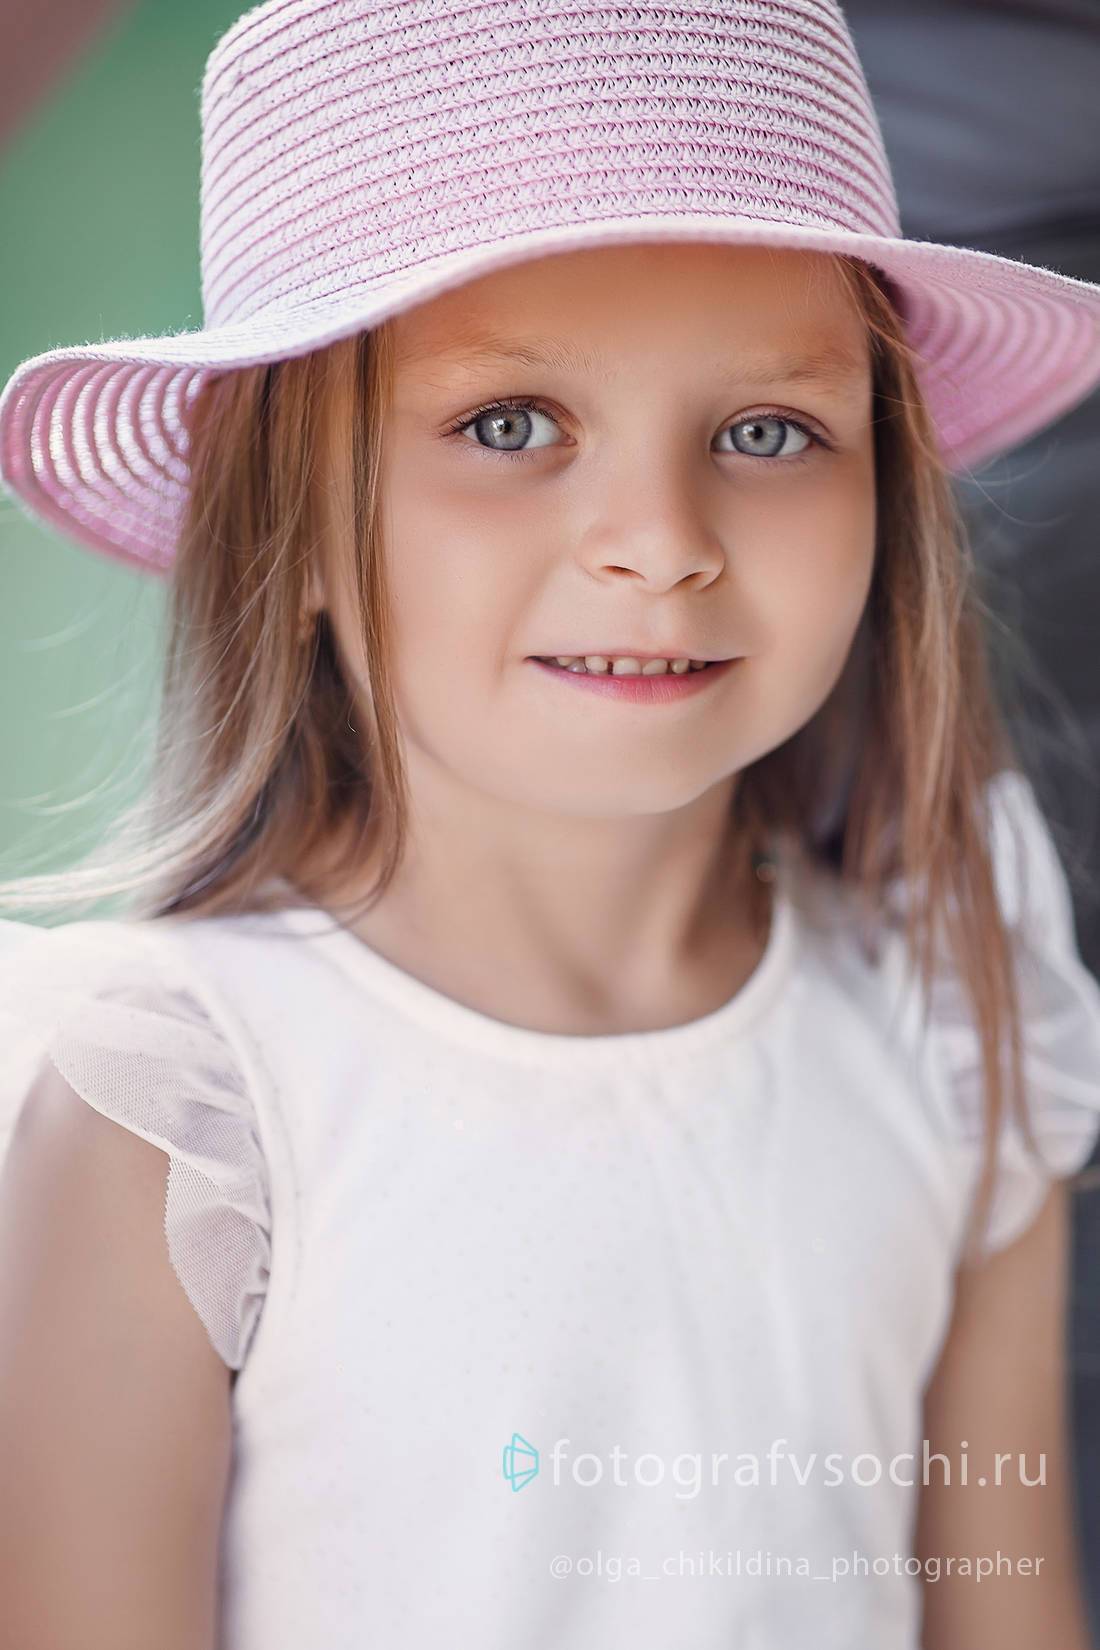 Портрет девочки в розовой шляпке